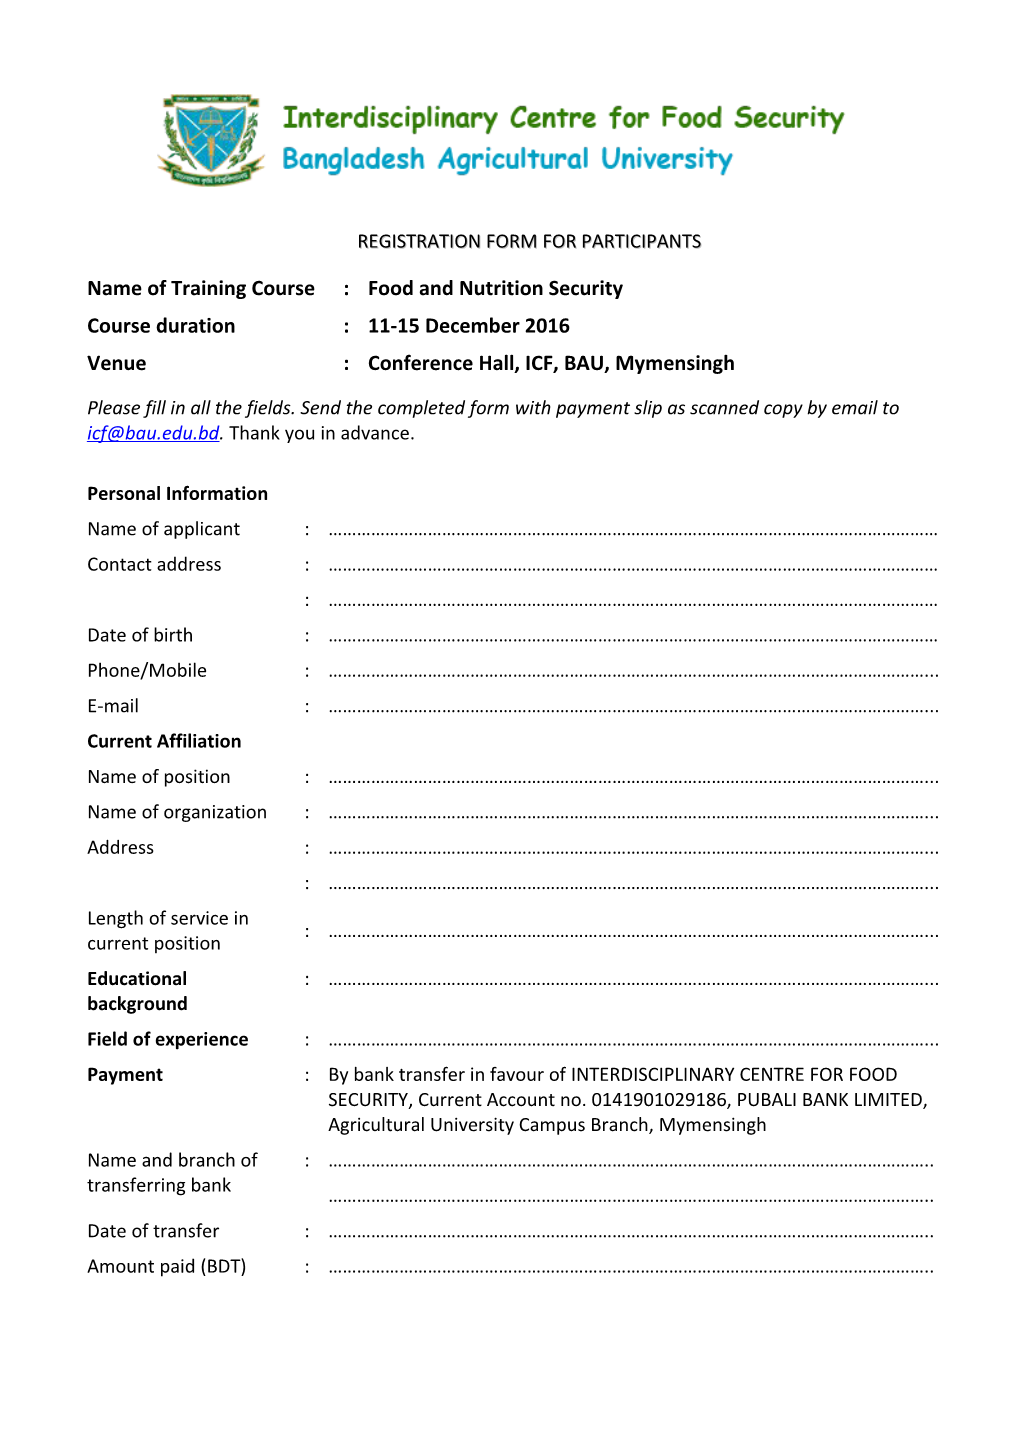 Registration Form for Participants